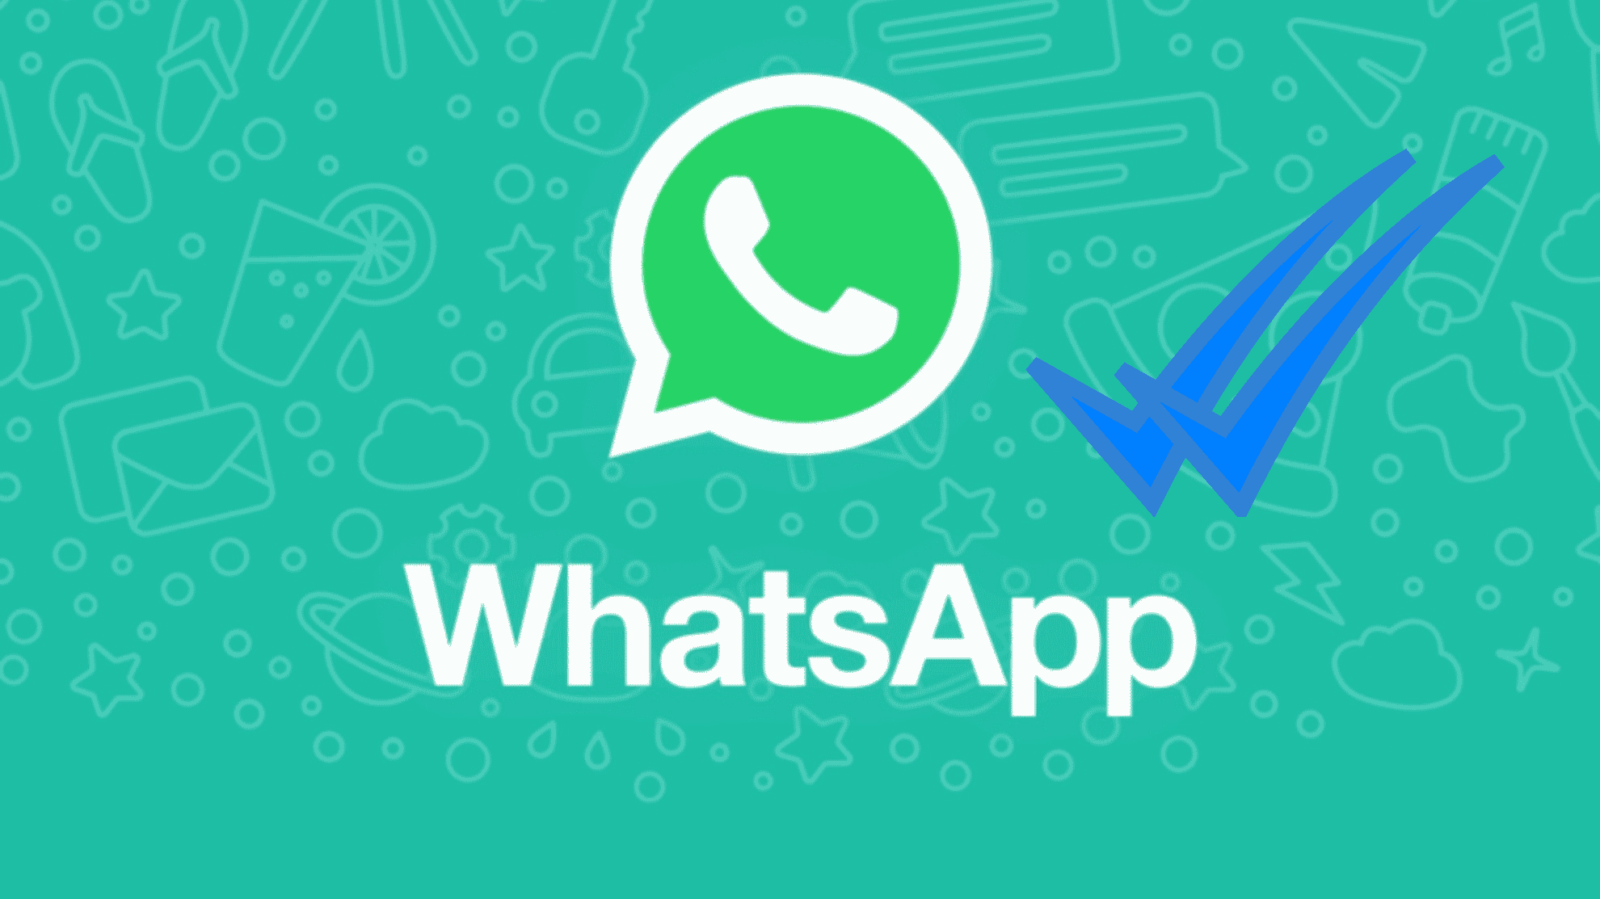 WhatsApp agregará un tercer check azul